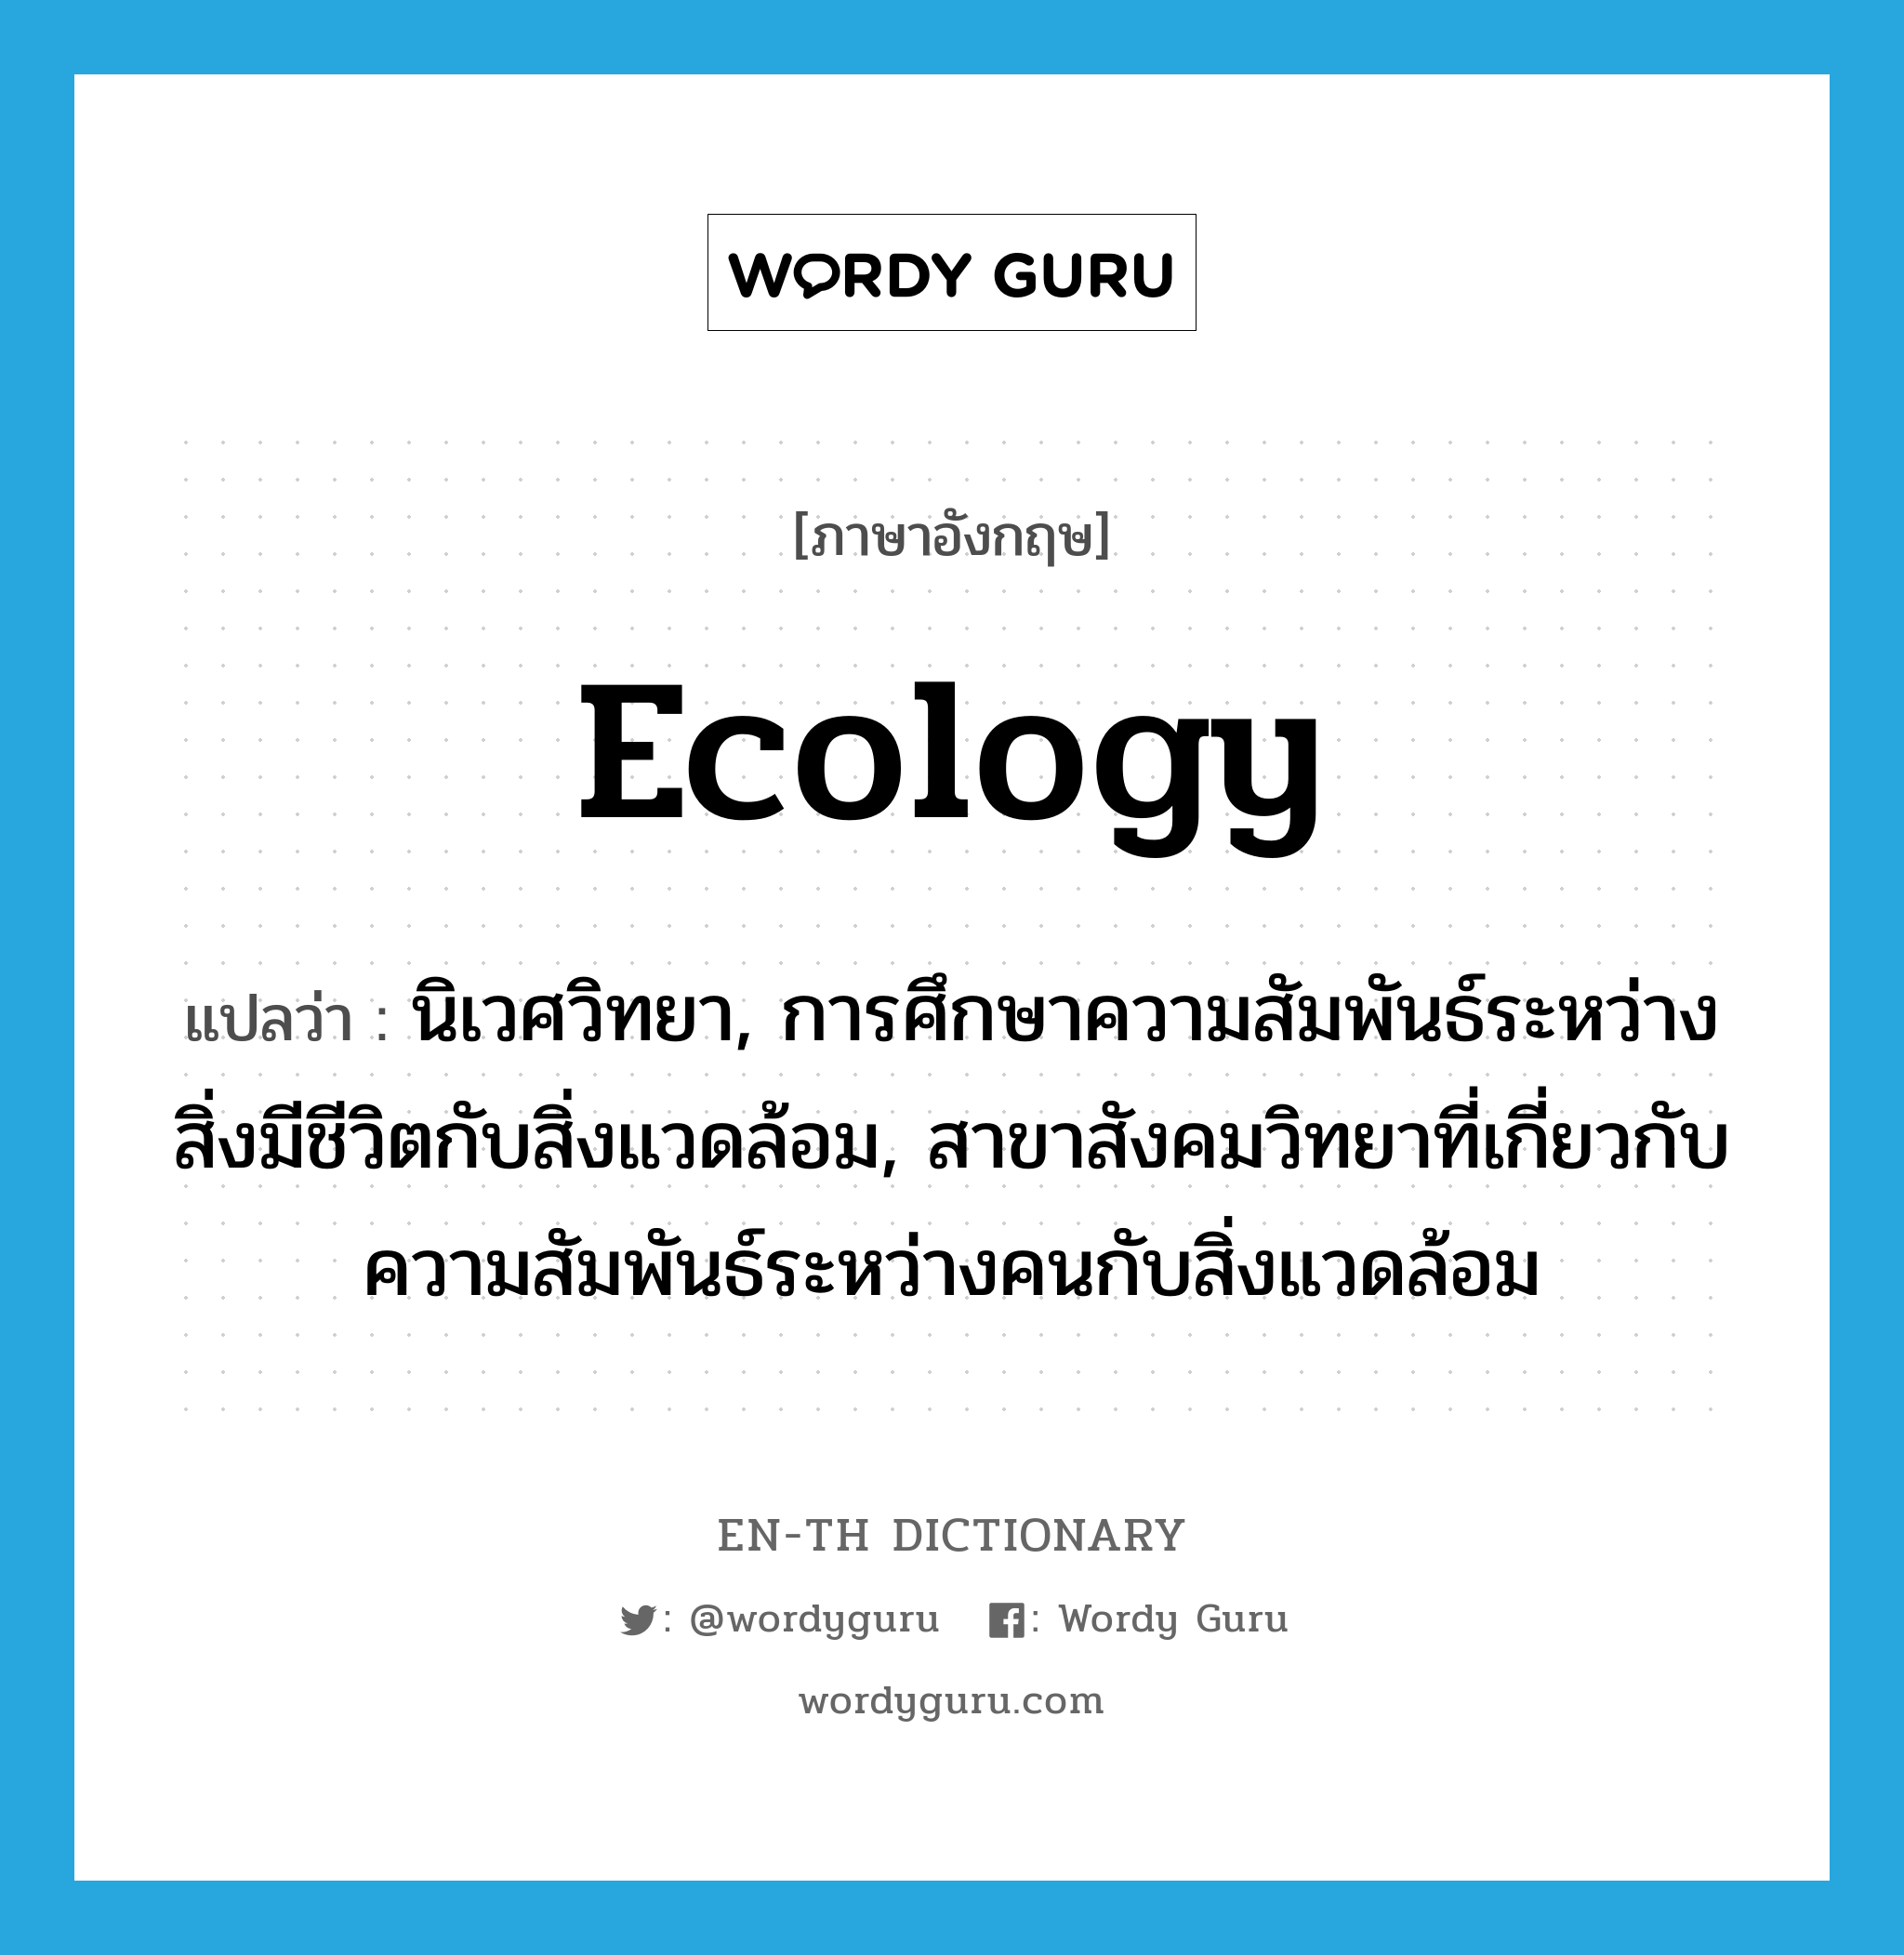 ecology แปลว่า?, คำศัพท์ภาษาอังกฤษ ecology แปลว่า นิเวศวิทยา, การศึกษาความสัมพันธ์ระหว่างสิ่งมีชีวิตกับสิ่งแวดล้อม, สาขาสังคมวิทยาที่เกี่ยวกับความสัมพันธ์ระหว่างคนกับสิ่งแวดล้อม ประเภท N หมวด N